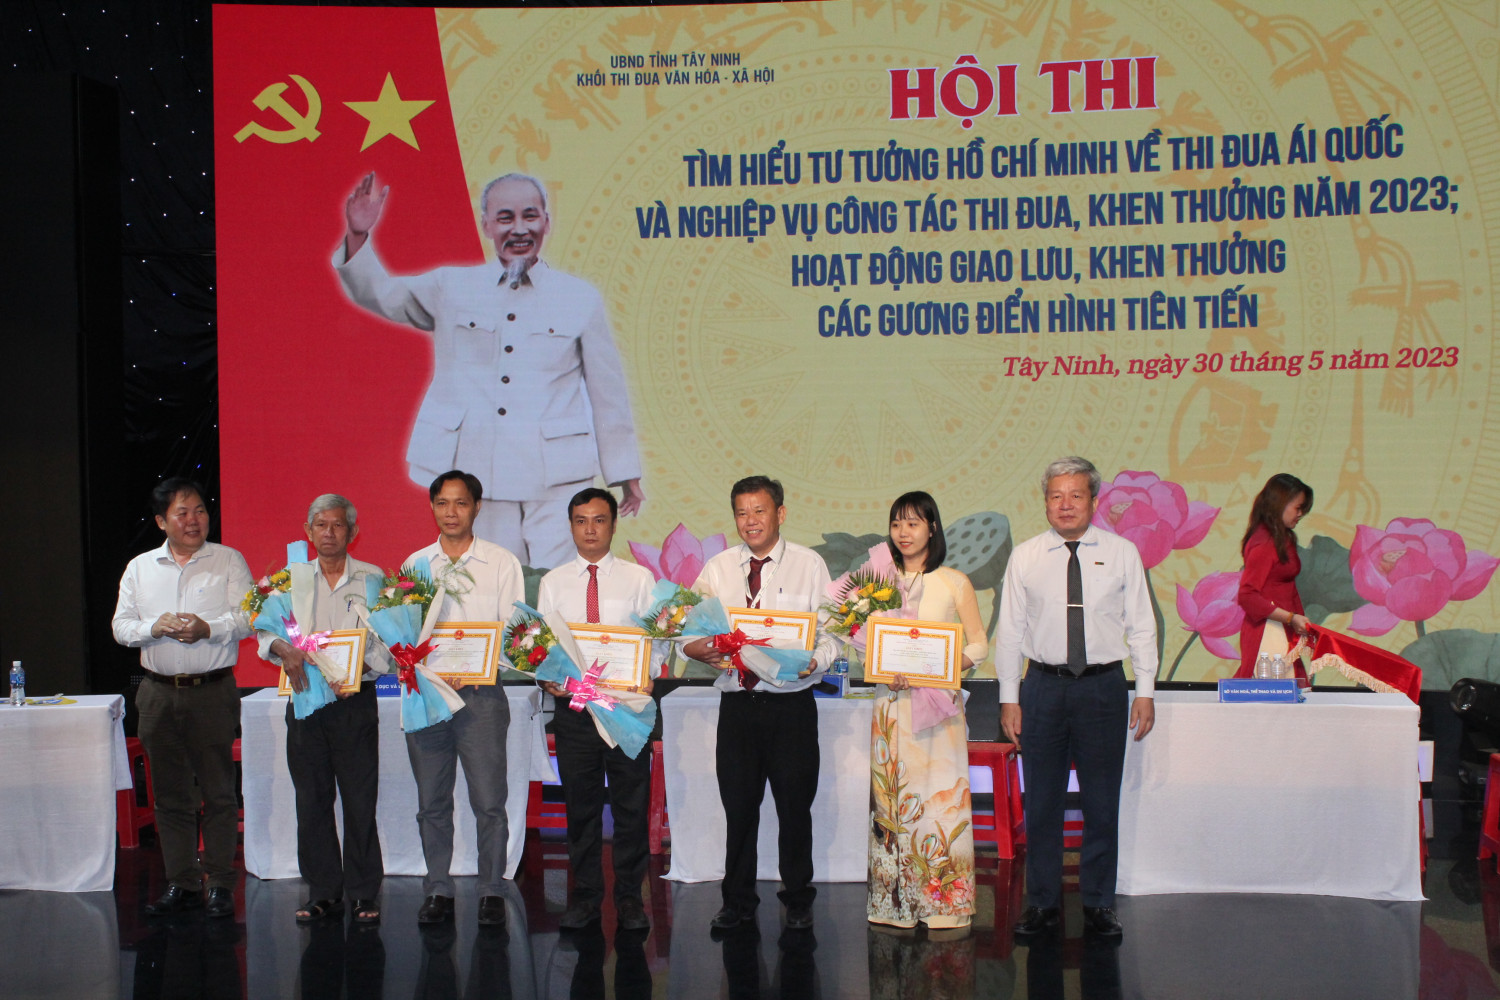 Đài Phát thanh và Truyền hình tỉnh Tây Ninh giành Giải nhất Hội thi tìm hiểu tư tưởng Hồ Chí Minh về thi đua ái quốc